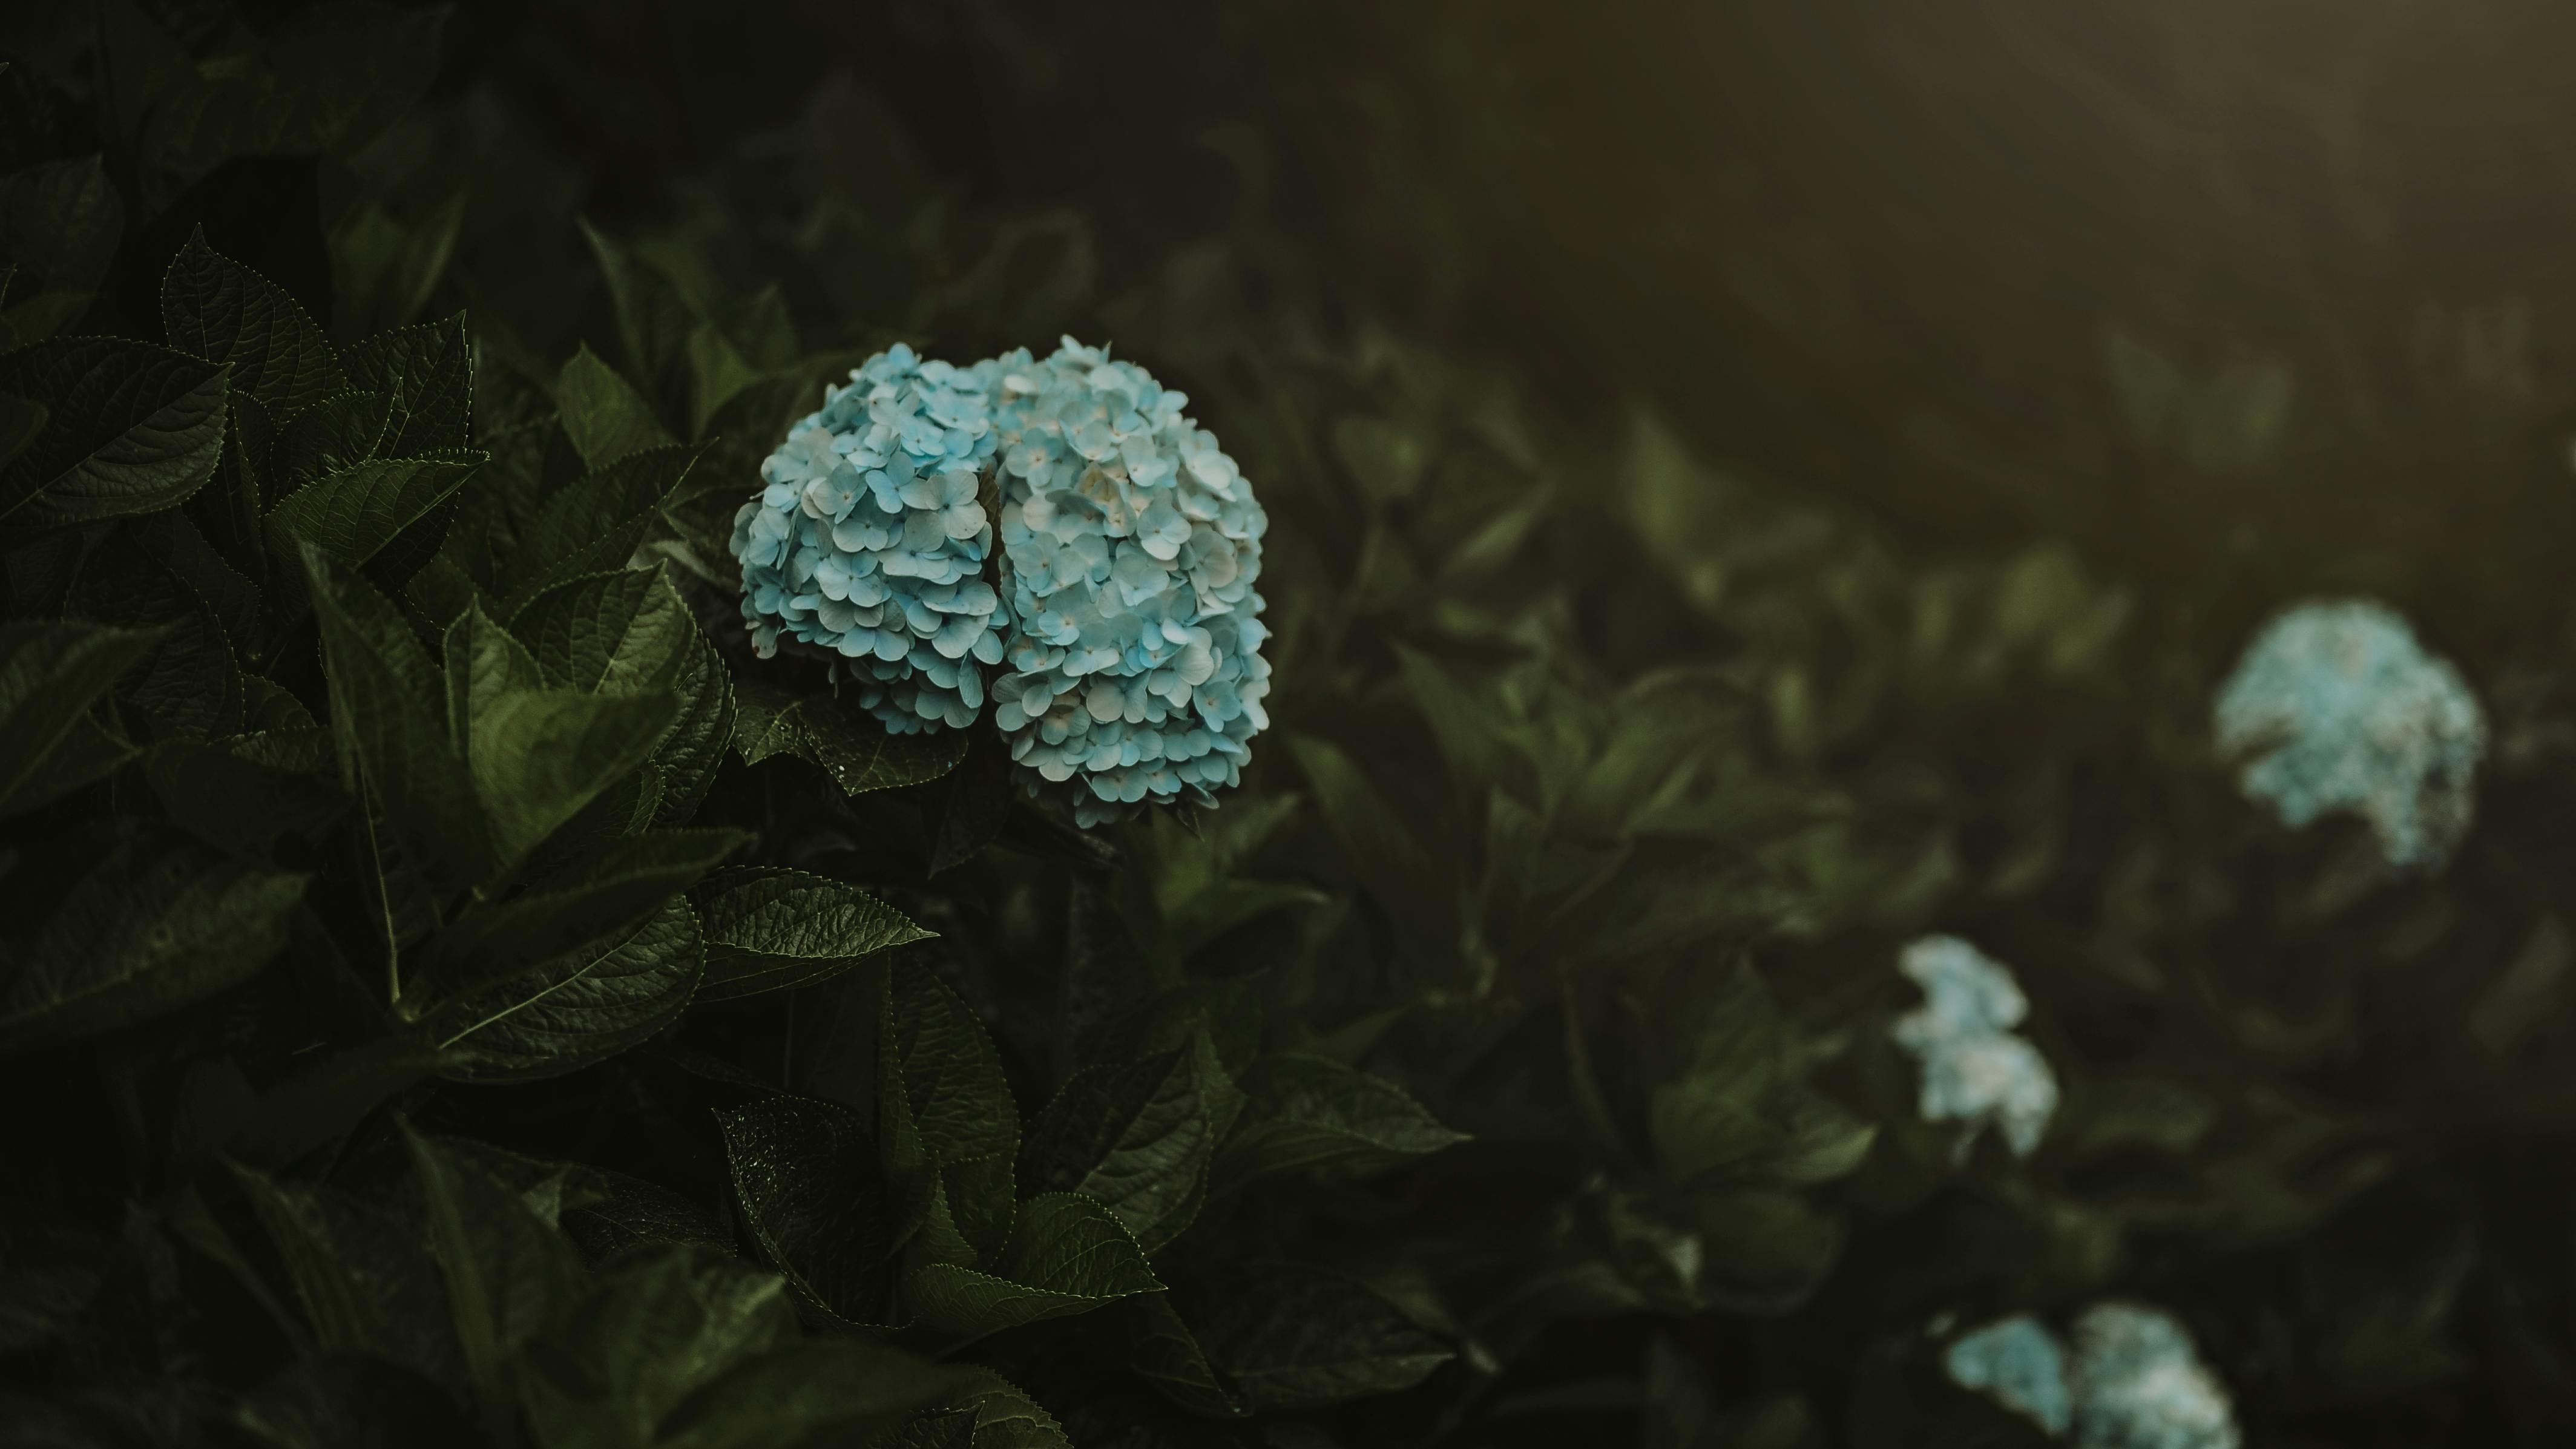 Lấy cảm hứng từ màu sắc tươi tắn của hoa xanh và lá, những hình ảnh miễn phí này sẽ mang đến cho bạn rất nhiều sự lựa chọn để làm hình nền cho máy tính của bạn. Với các loại hoa và lá đầy màu sắc, bạn có thể thưởng thức các mẫu hình nền độc đáo và sáng tạo, và tăng thêm sự sinh động cho máy tính của mình.